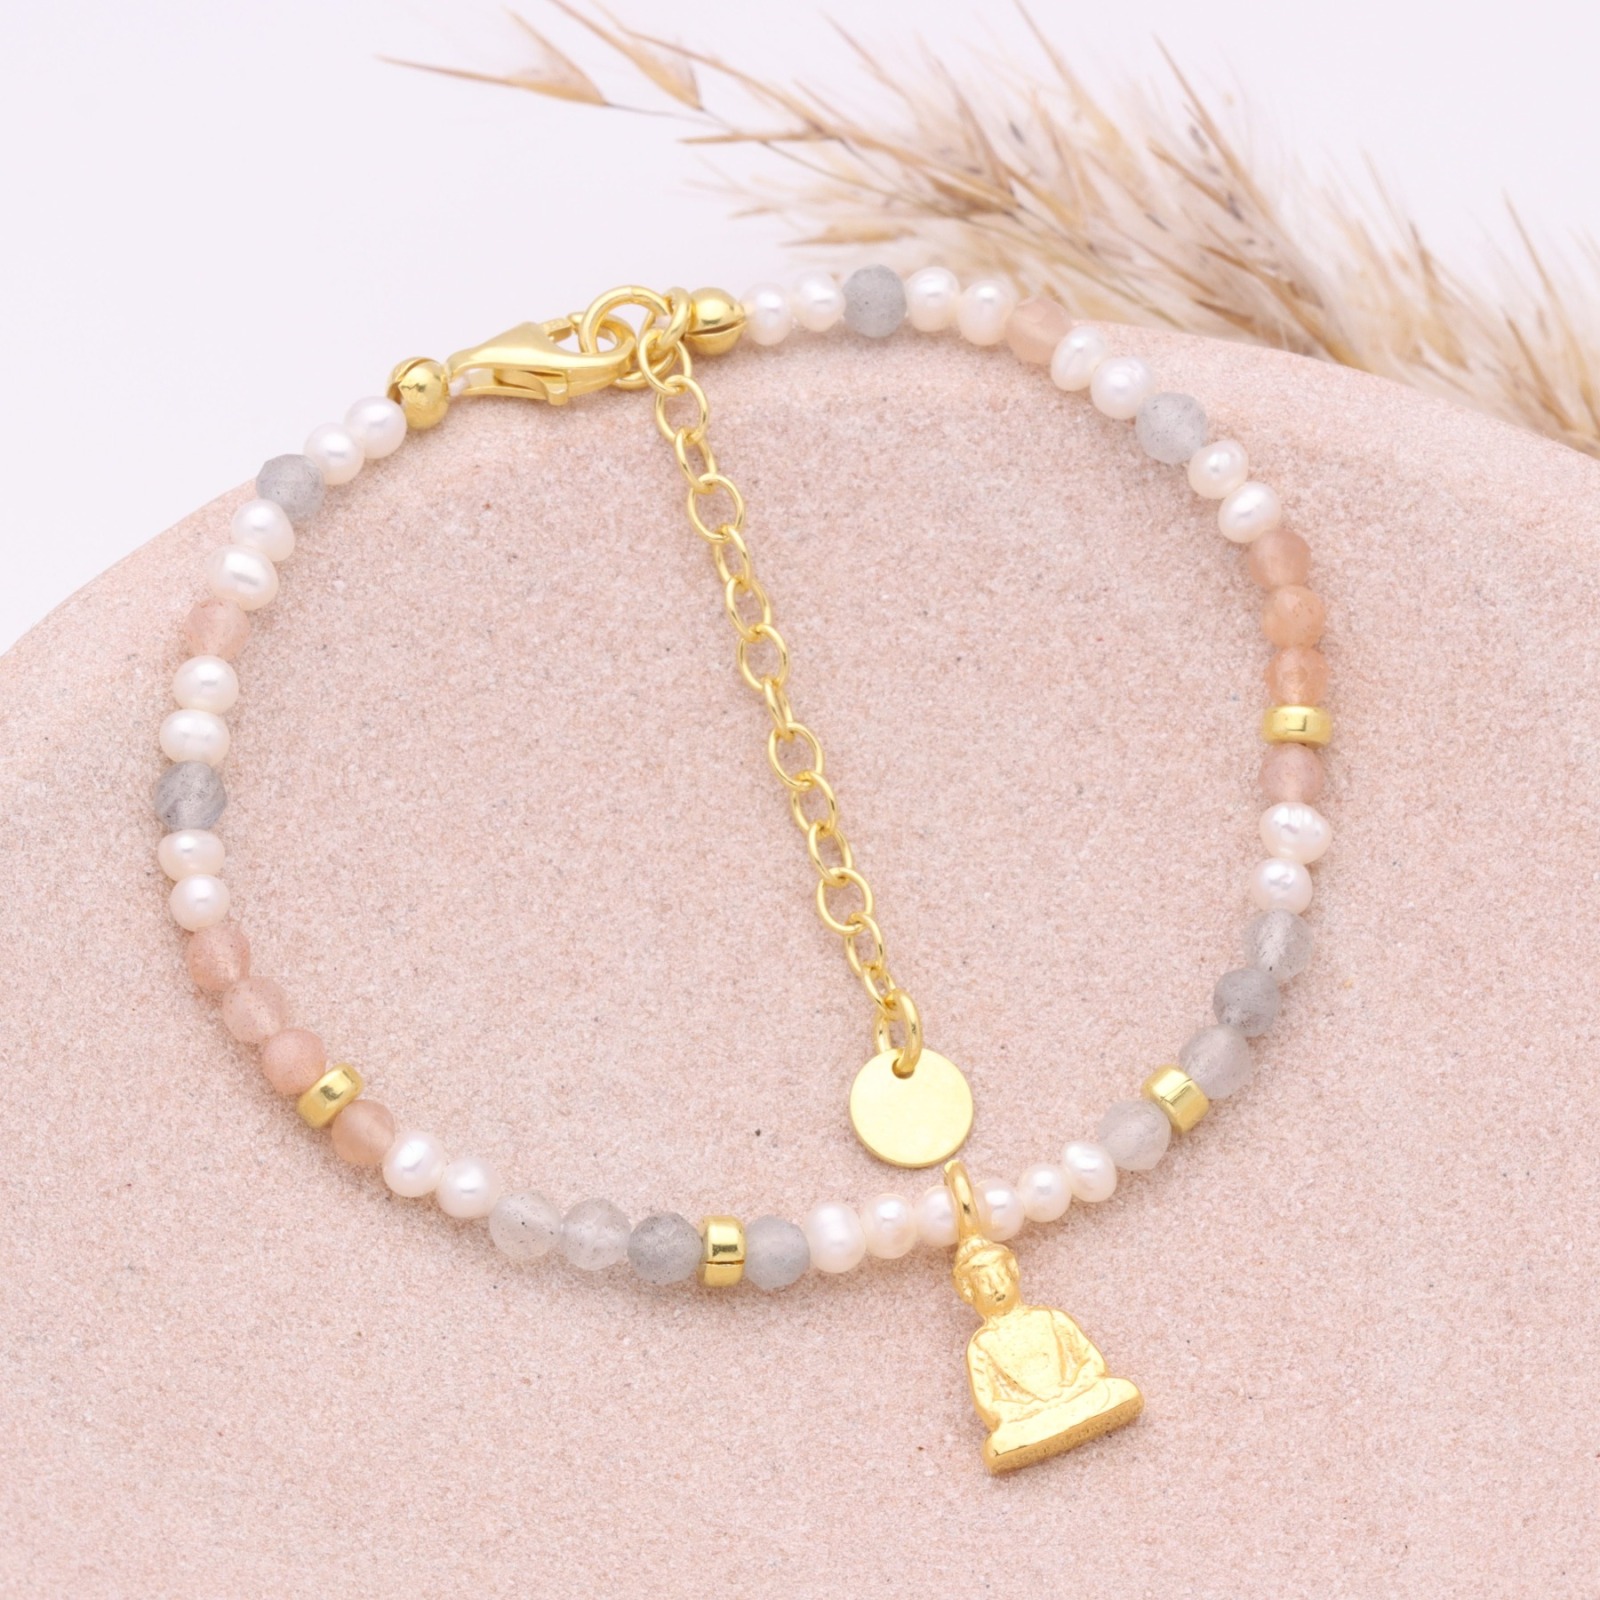 Filigranes Armband aus Mondstein und echten Perlen mit einem kleinen Buddha Silber oder Gold